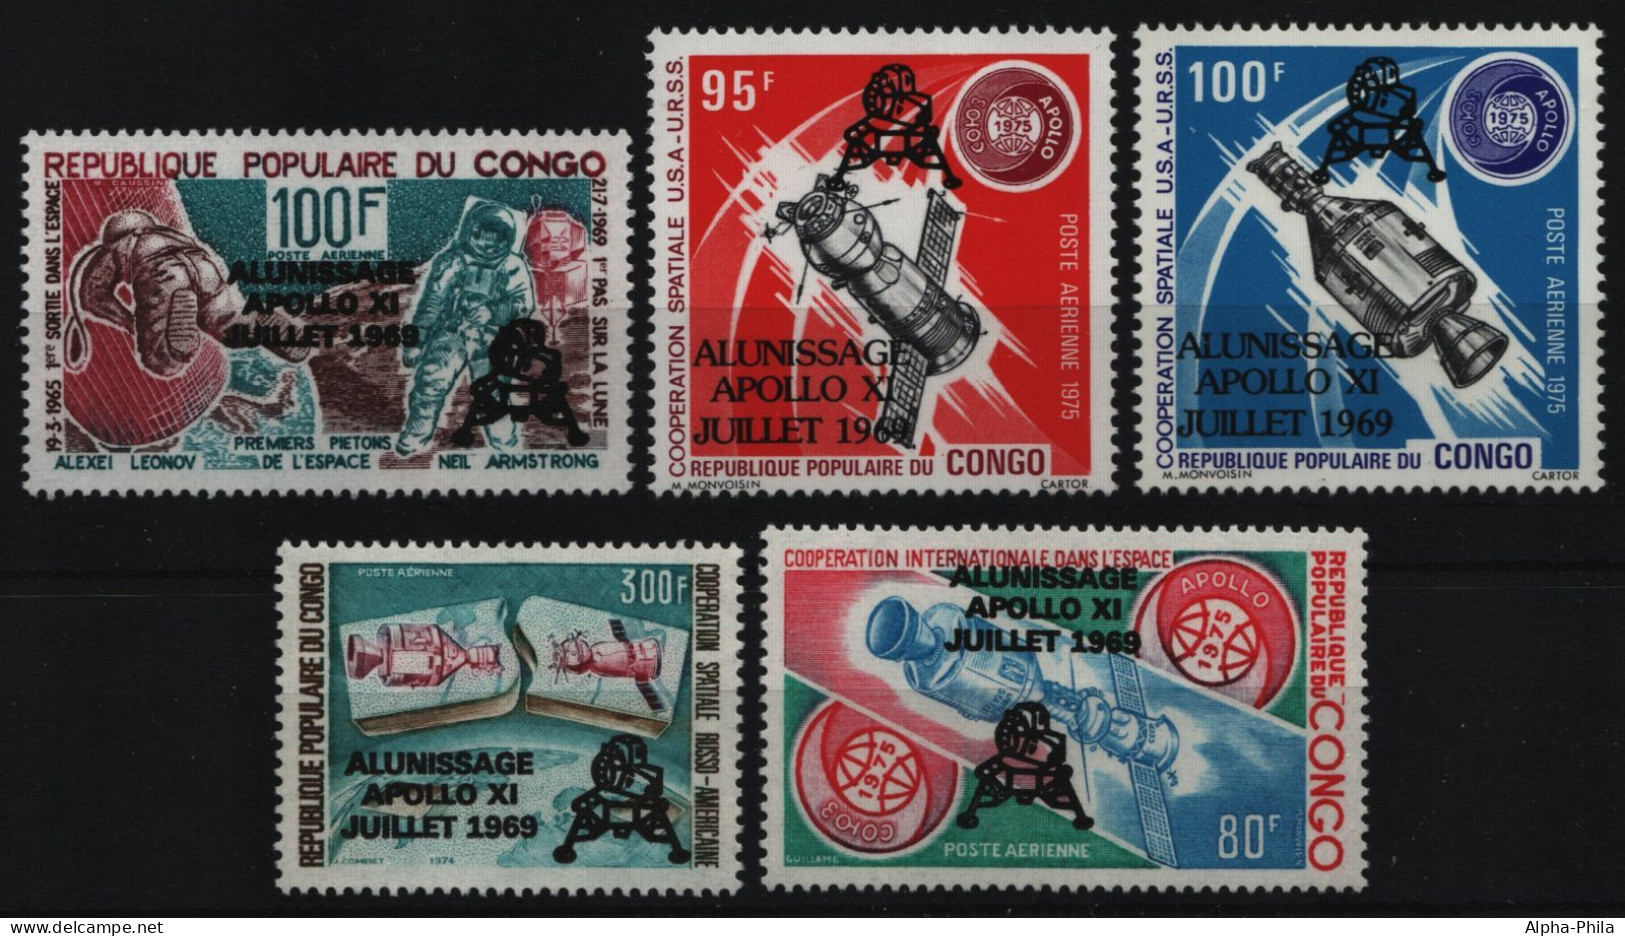 Kongo-Brazzaville 1979 - Mi-Nr. 702-706 ** - MNH - Raumfahrt / Space - Ongebruikt